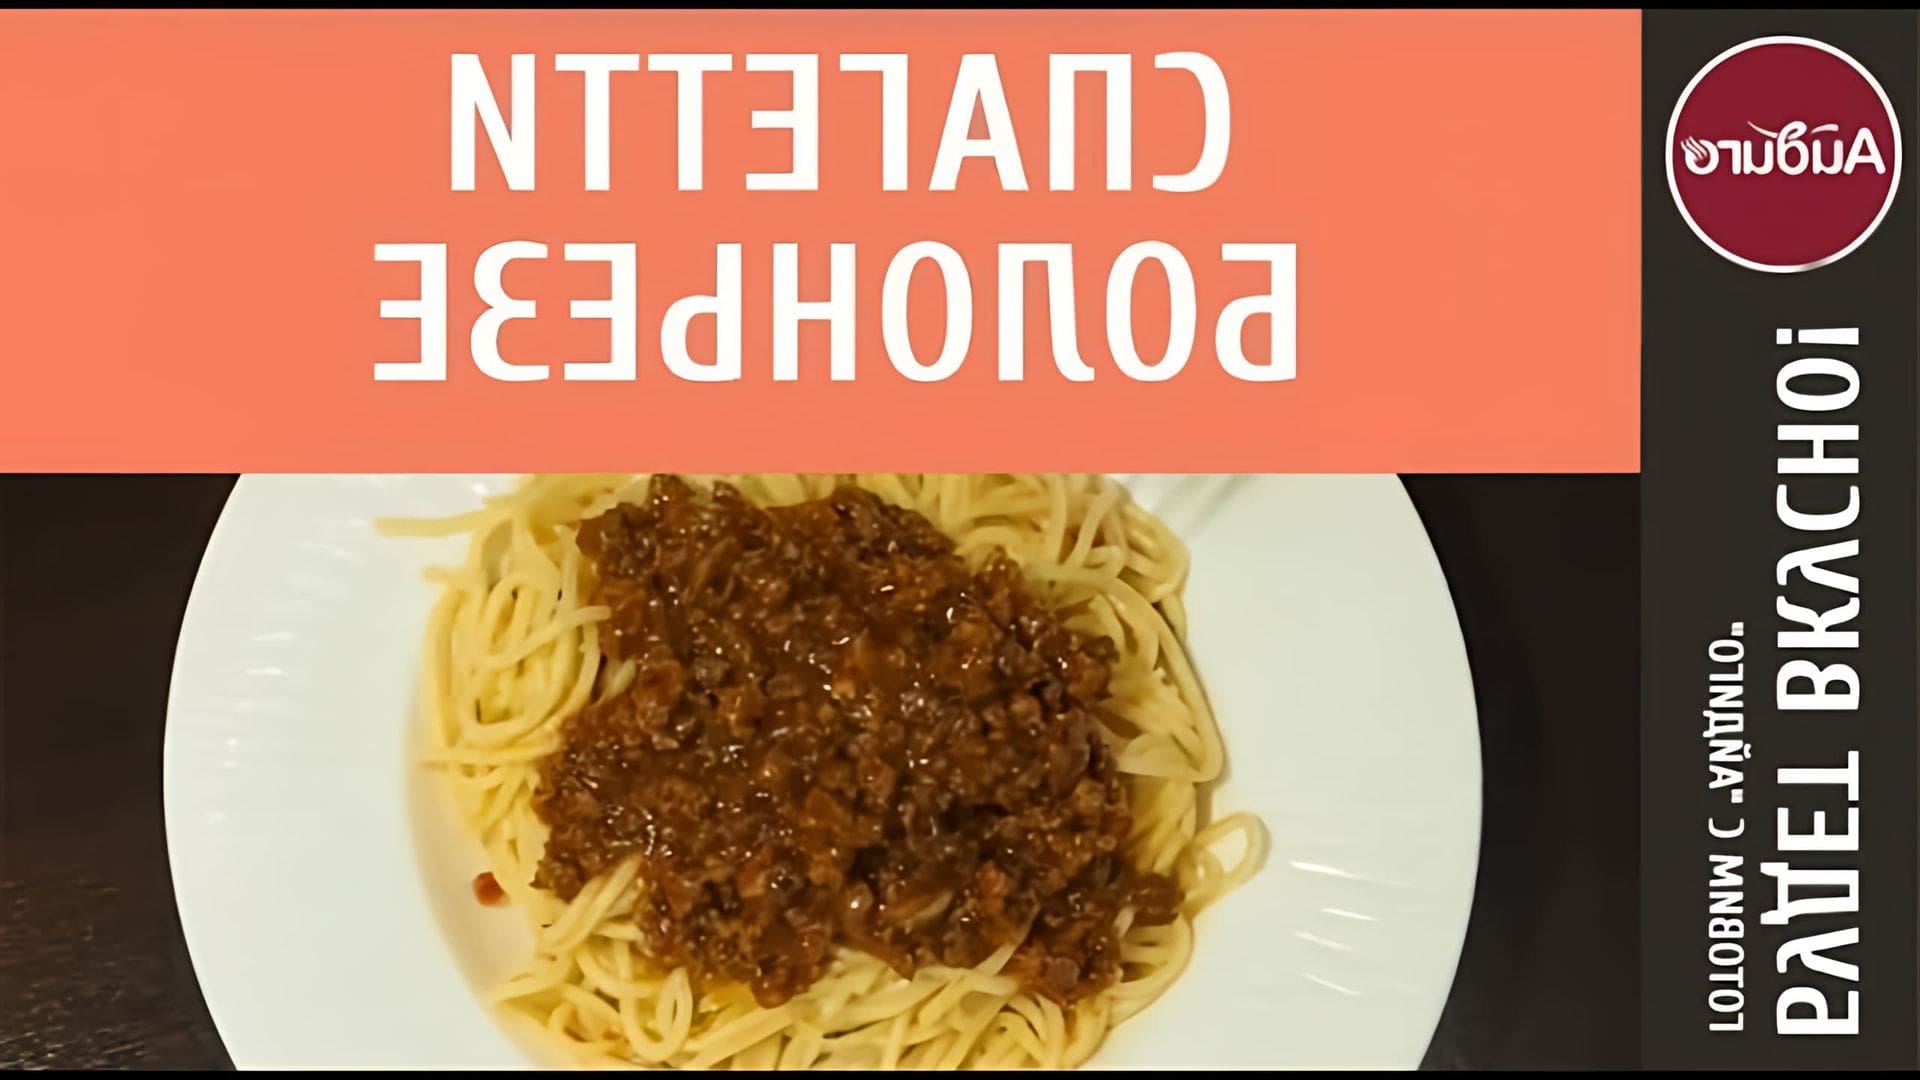 В этом видео-ролике будет представлен пошаговый рецепт приготовления спагетти болоньезе